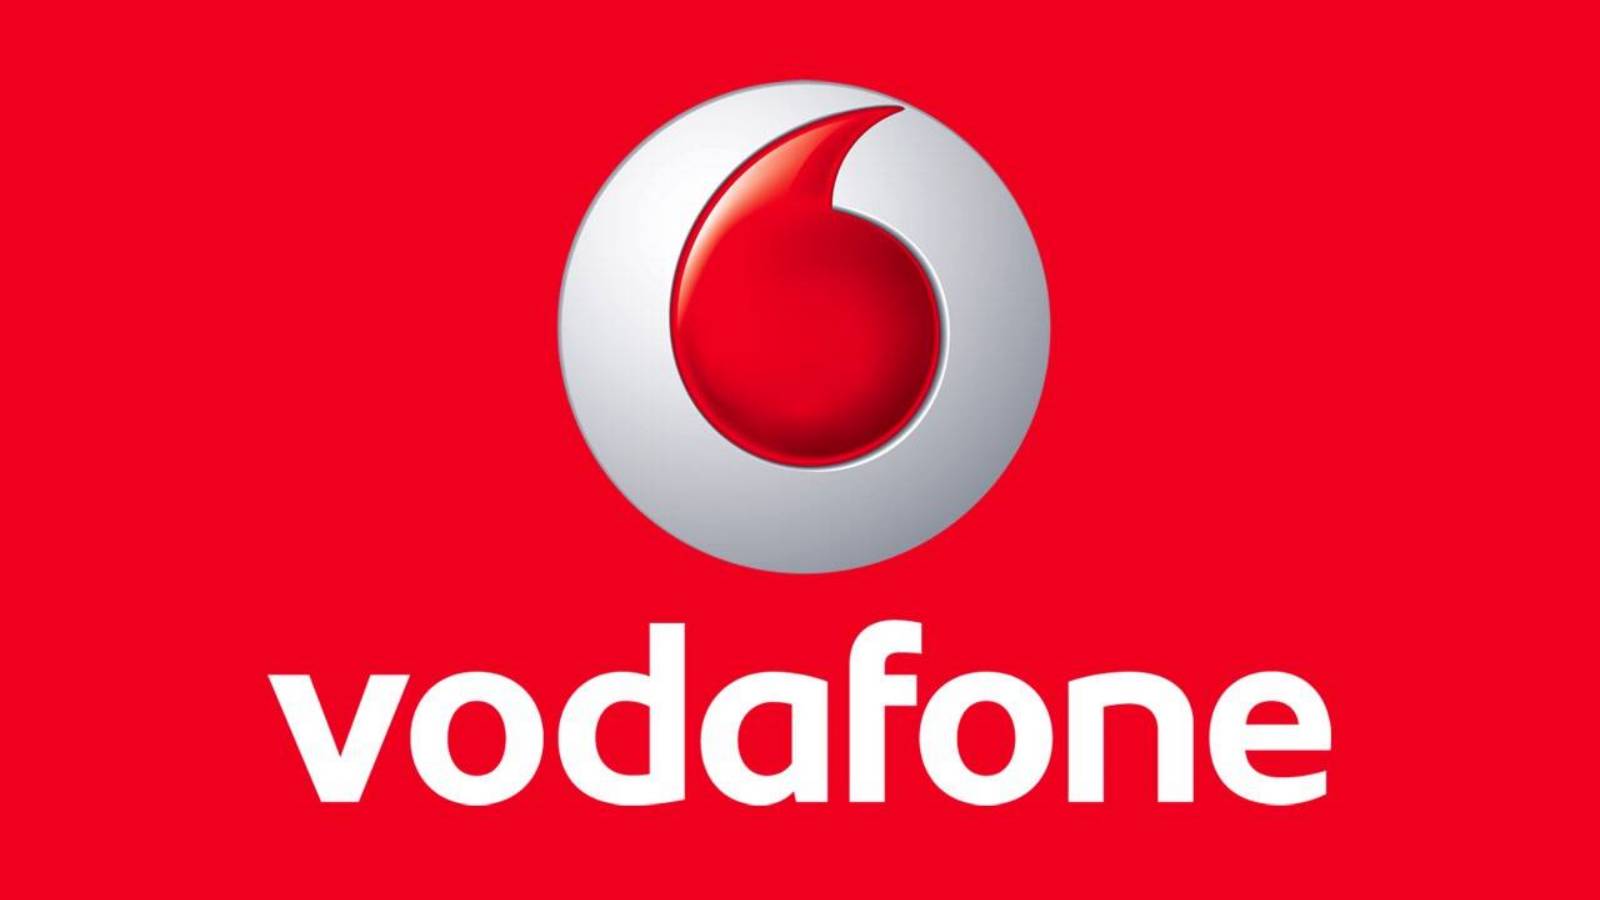 Offizielle Ankündigung von Vodafone, die Kunden 6 Monate lang KOSTENLOSE Tage gewährt